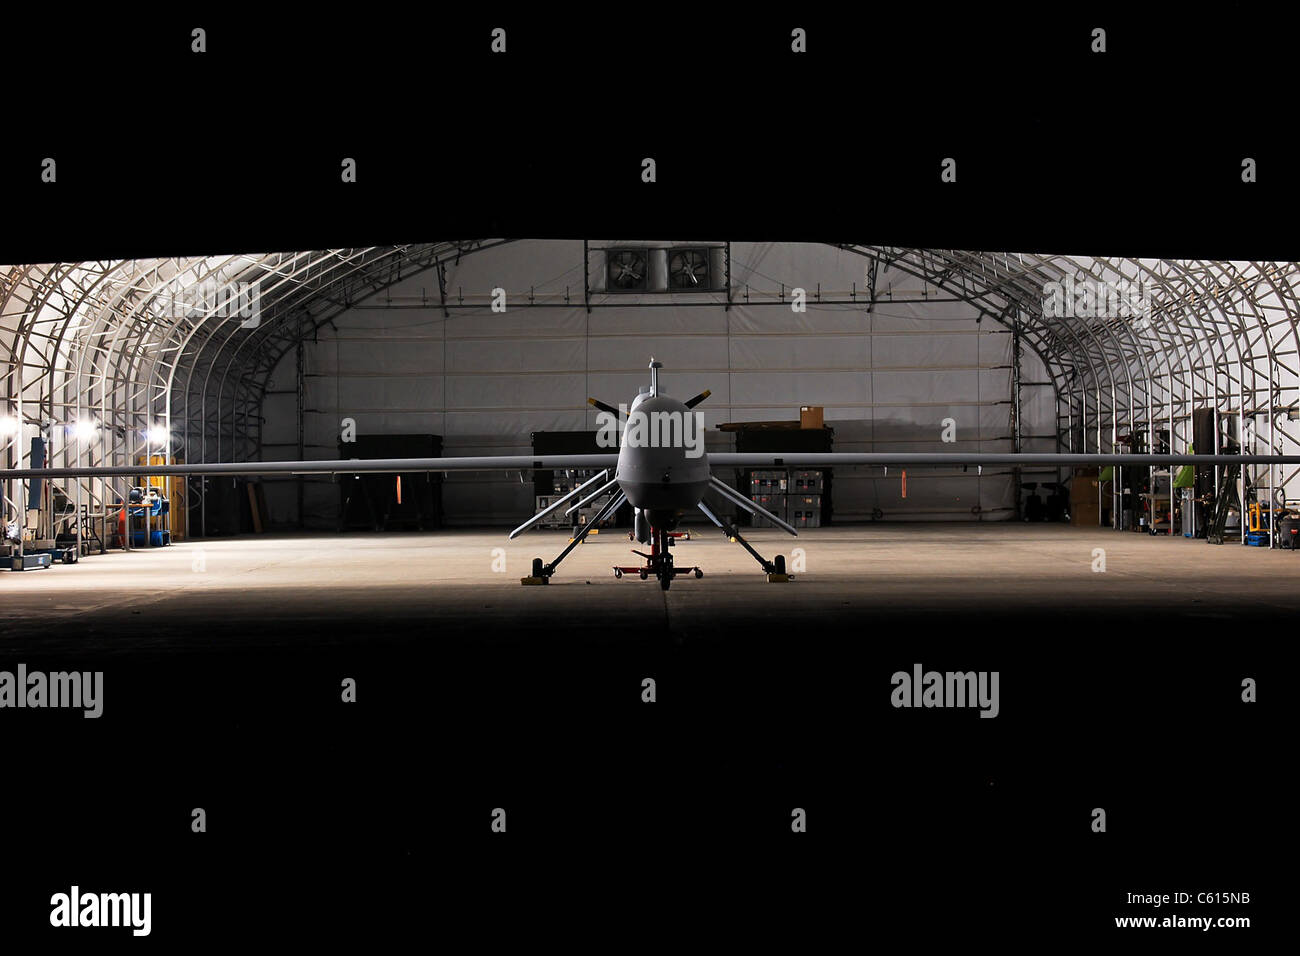 Predator drone un velivoli senza pilota può rimanere in volo per 24 ore ed eseguire la sorveglianza e gli attacchi missilistici mentre guidati in modo remoto da operatori umani in una posizione distante. (BSLOC 2011 12 316) Foto Stock